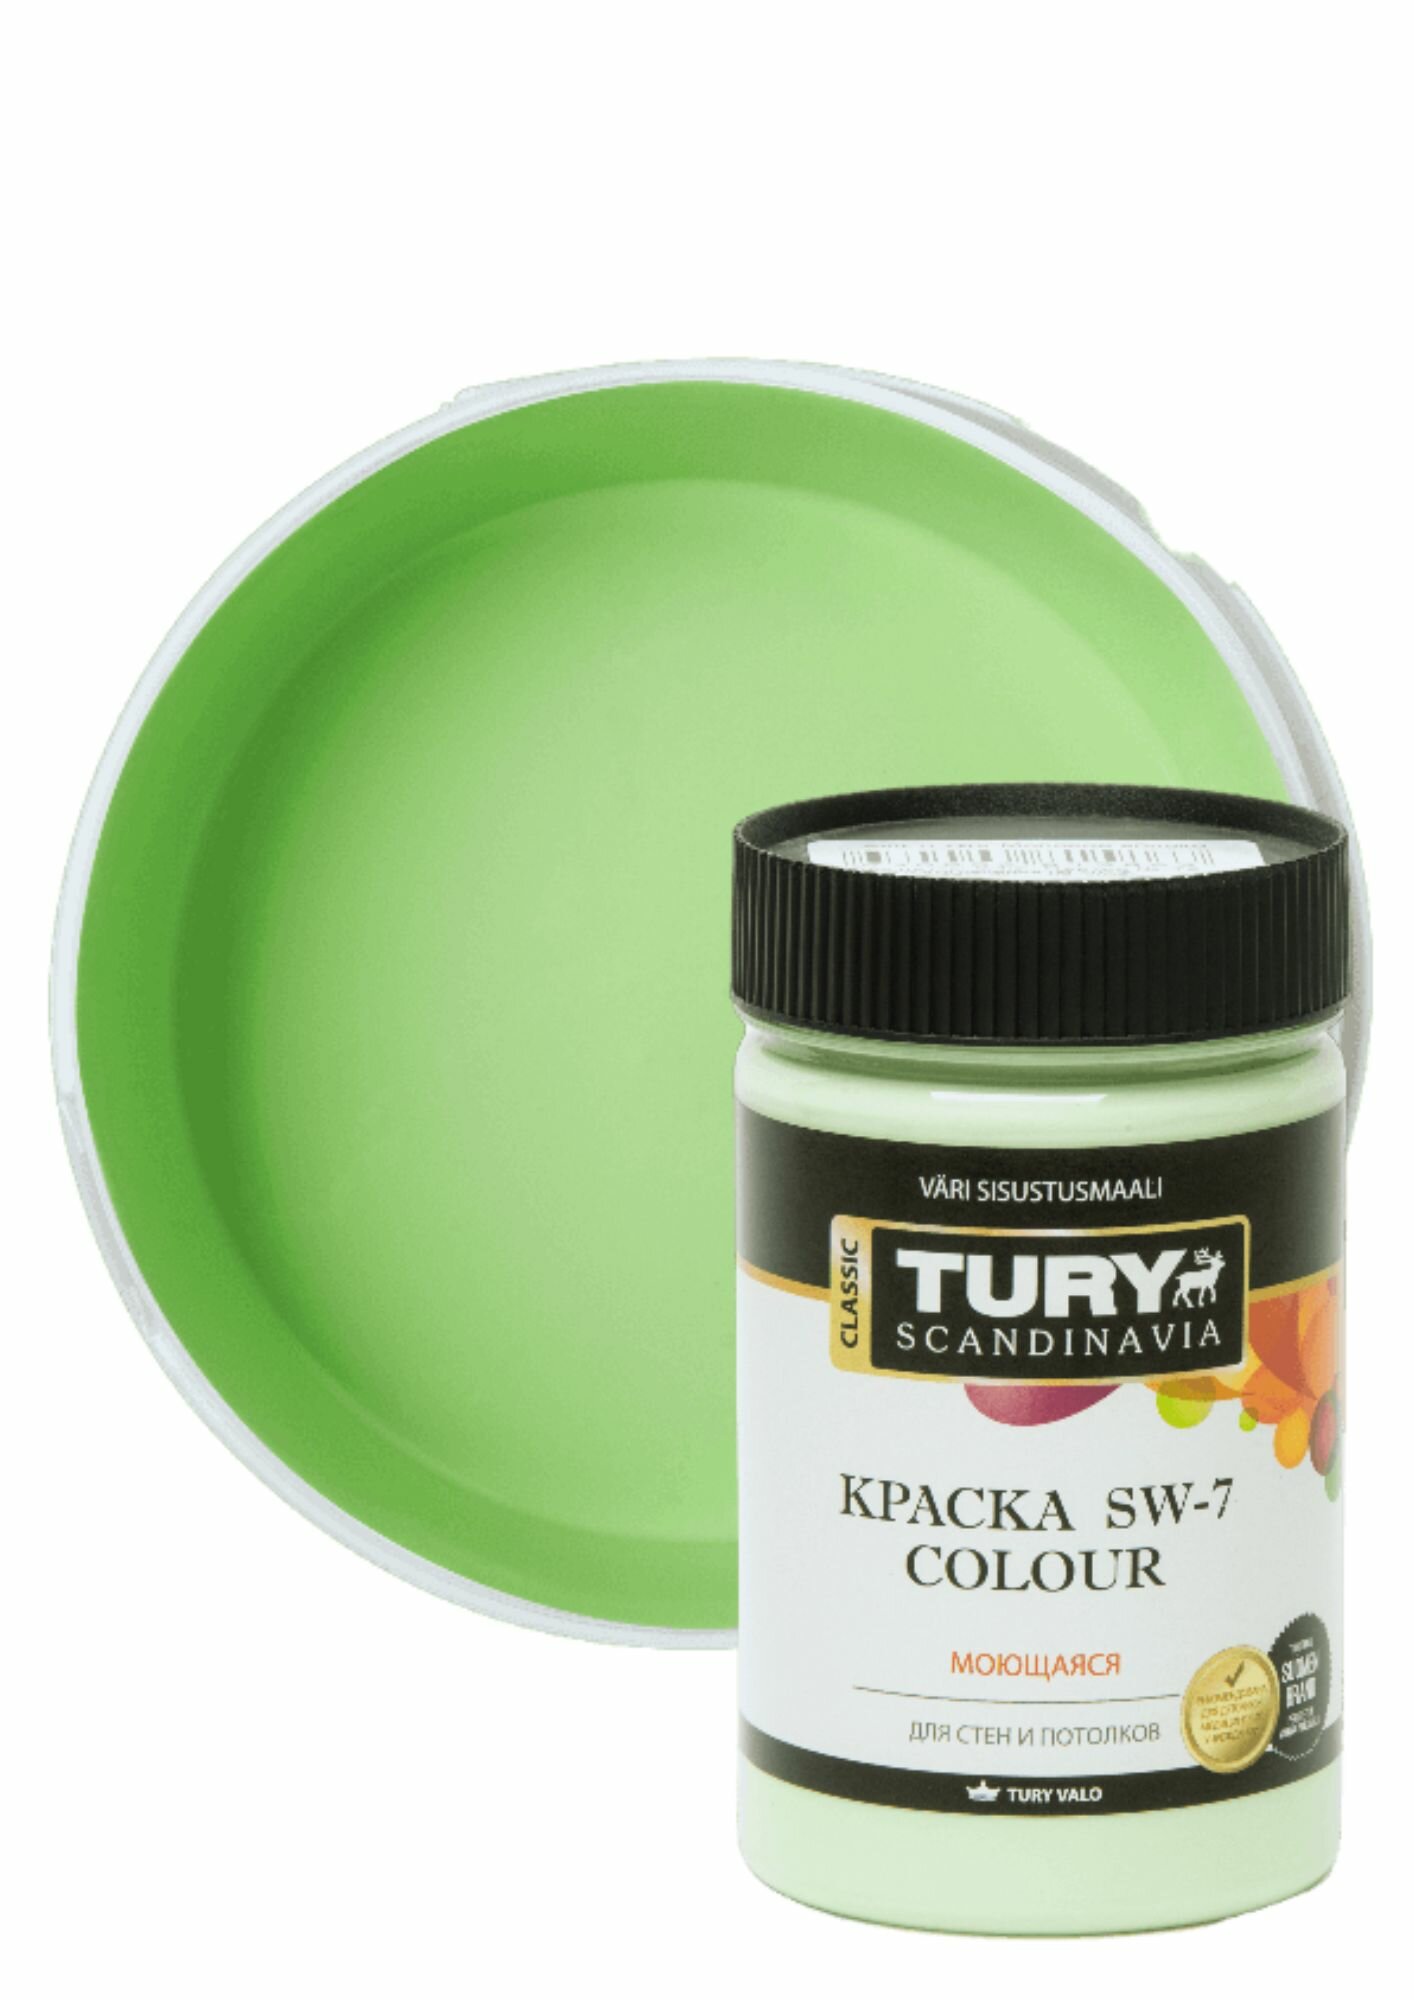 Краска для обоев, стен и потолков TURY SW-7 Colour акриловая моющаяся быстросохнущая матовая, без запаха, цвет Молодое яблоко, 0.4 кг